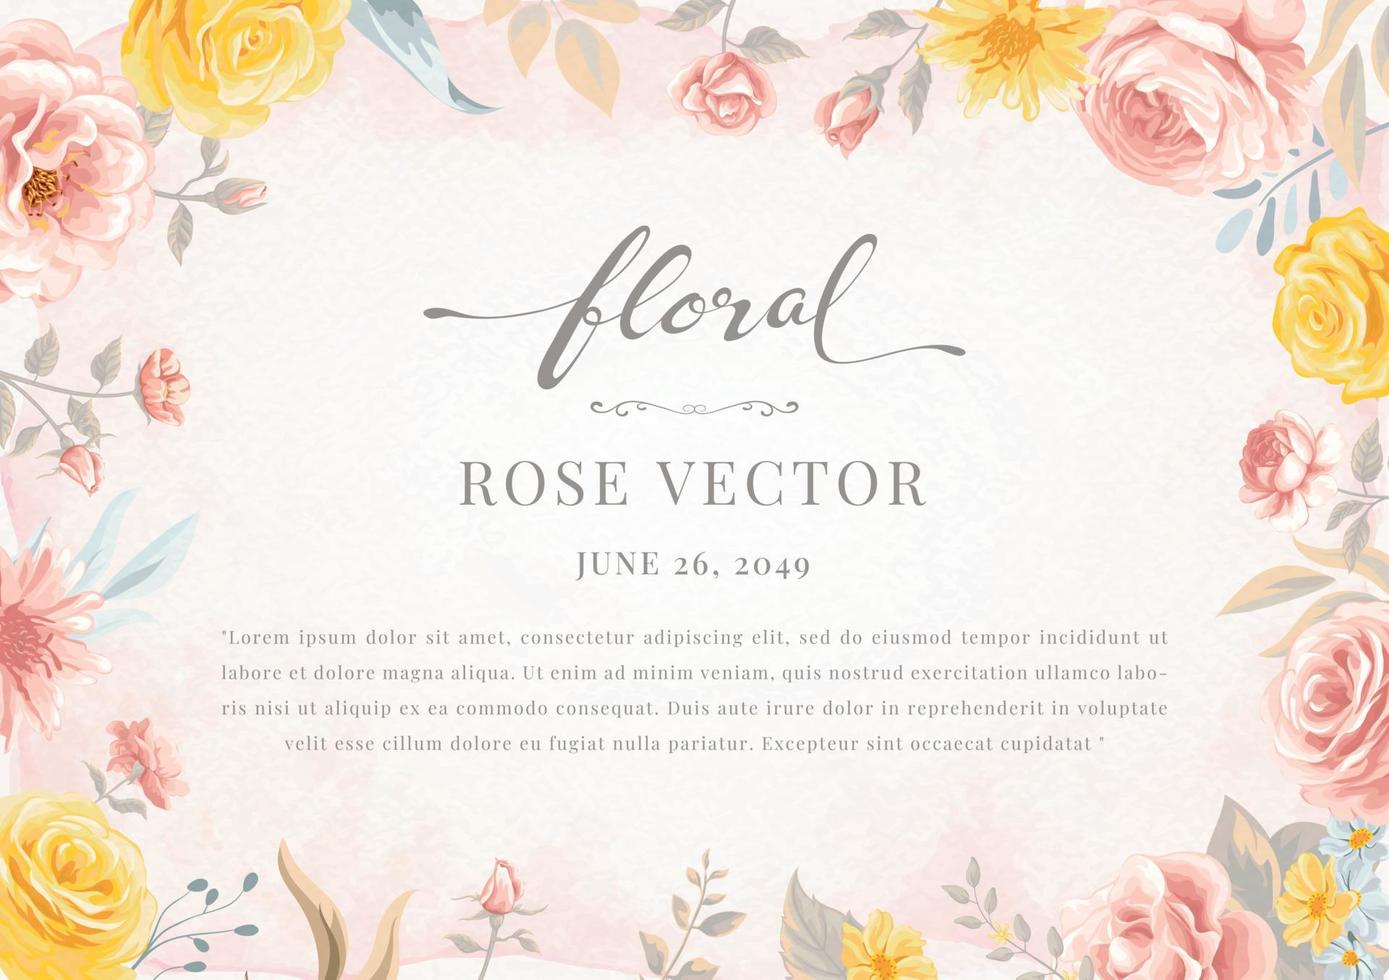 linda flor rosa e ilustração pintada digital de folha botânica para amor casamento dia dos namorados ou arranjo convite design cartão de saudação vetor